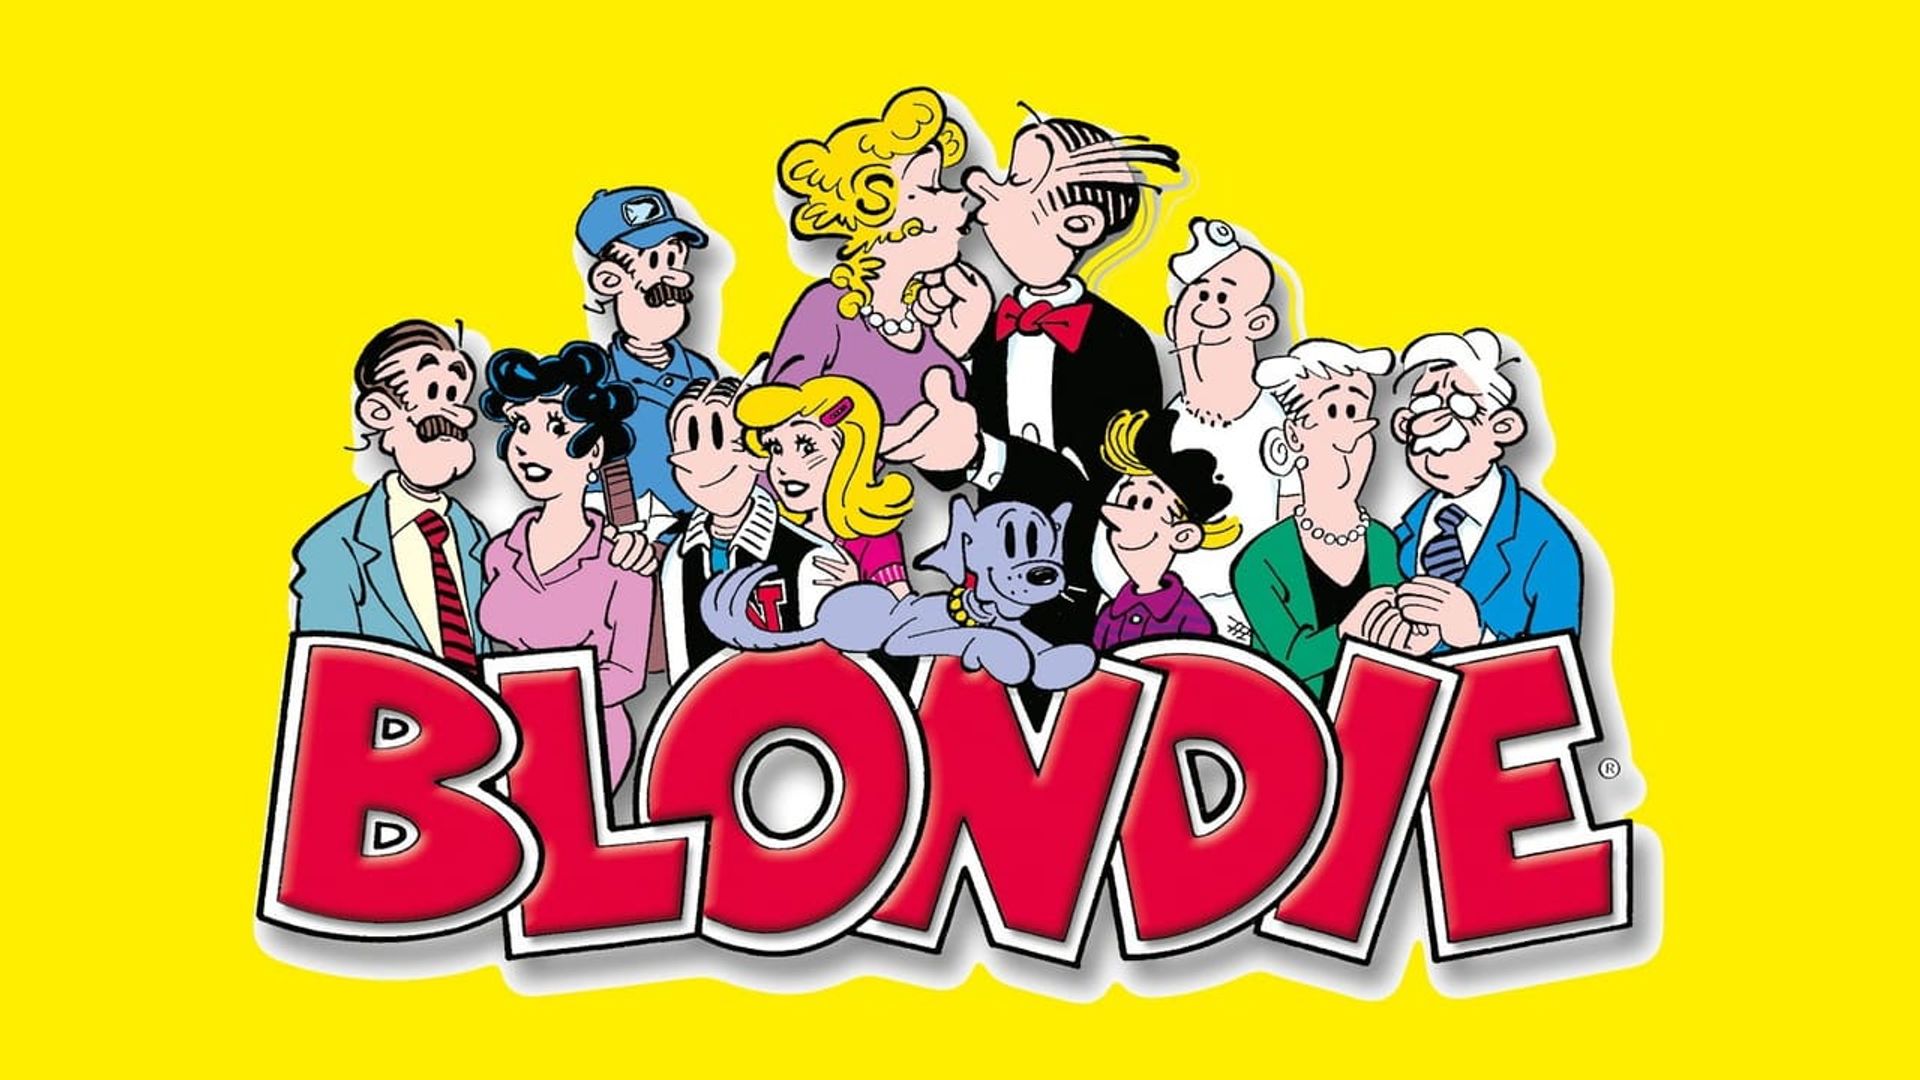 Blondie & Dagwood background